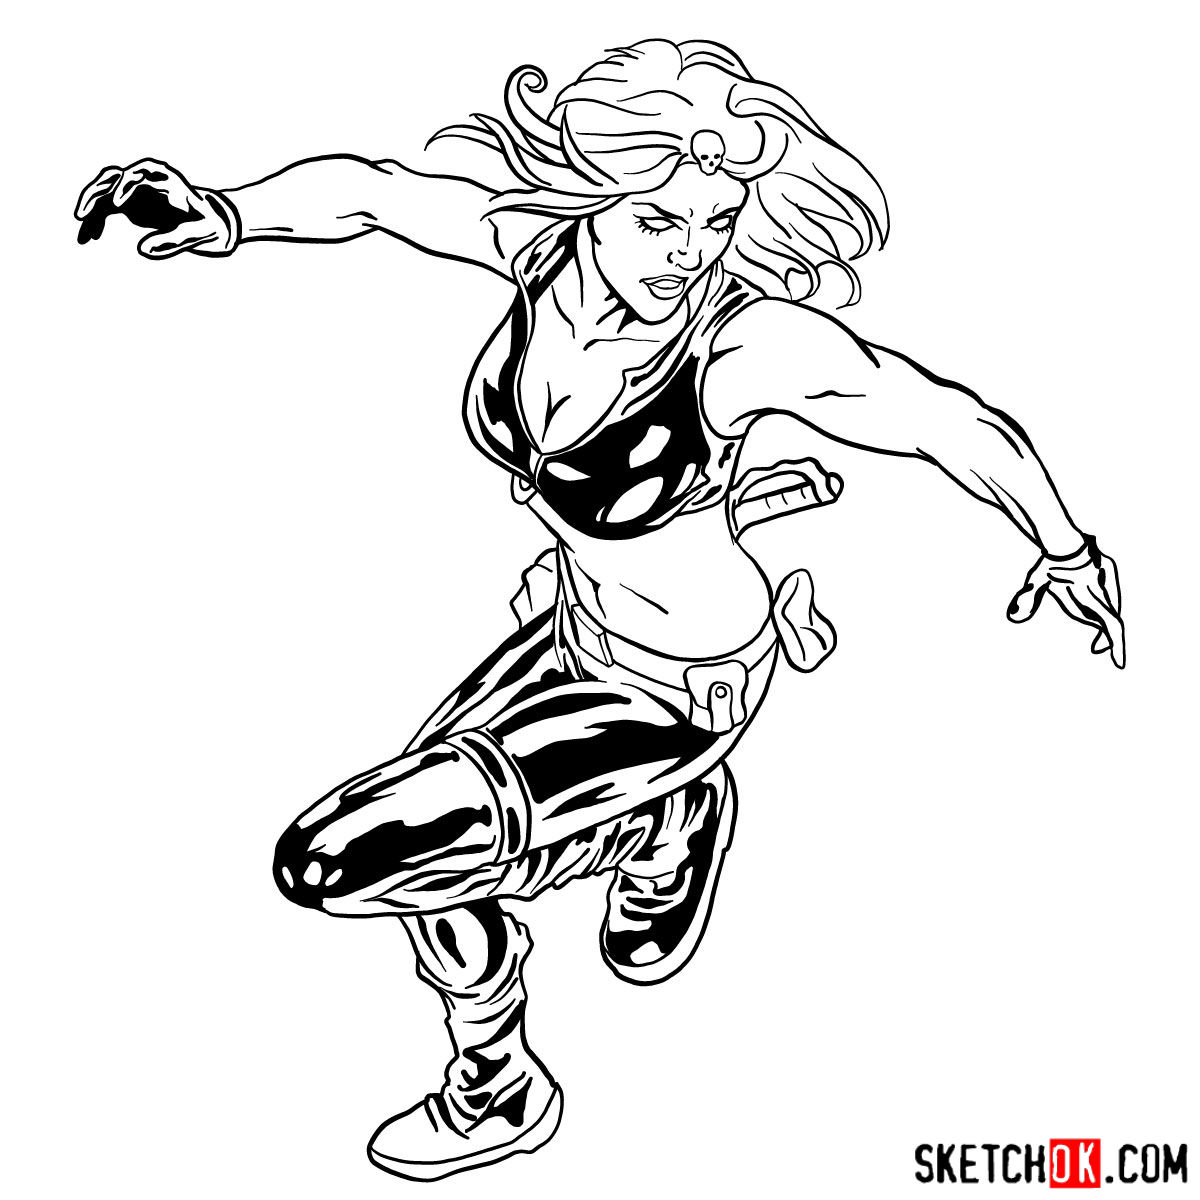 X-Men Drawing Image